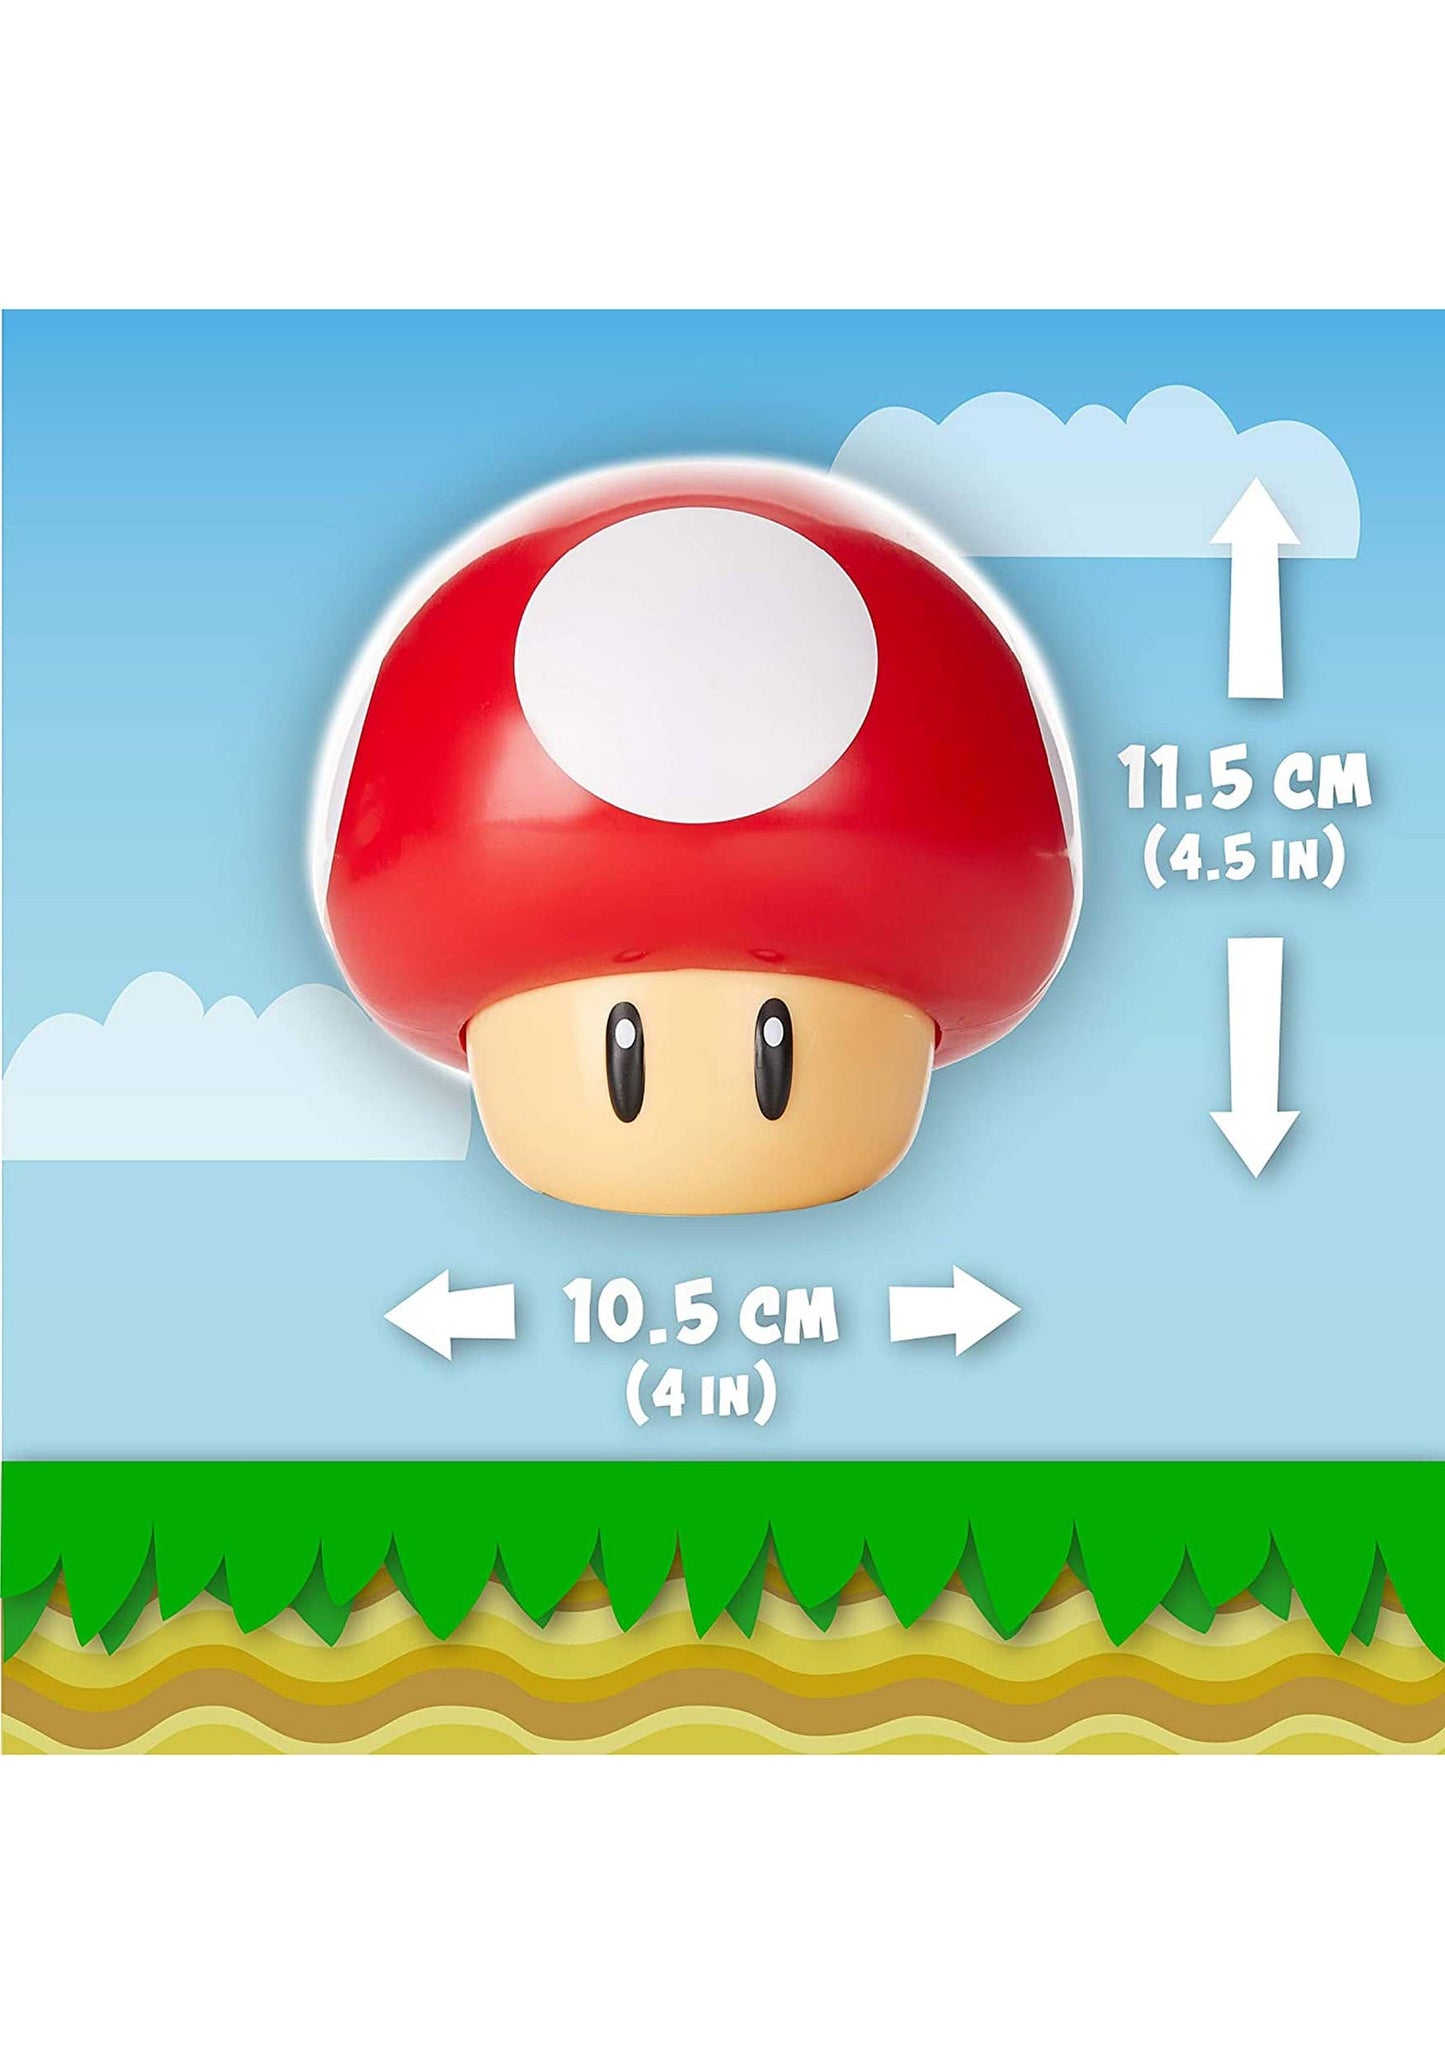 Madera SG Super Mario Super Mushroom Lamp 11.5CM X 10.5CM